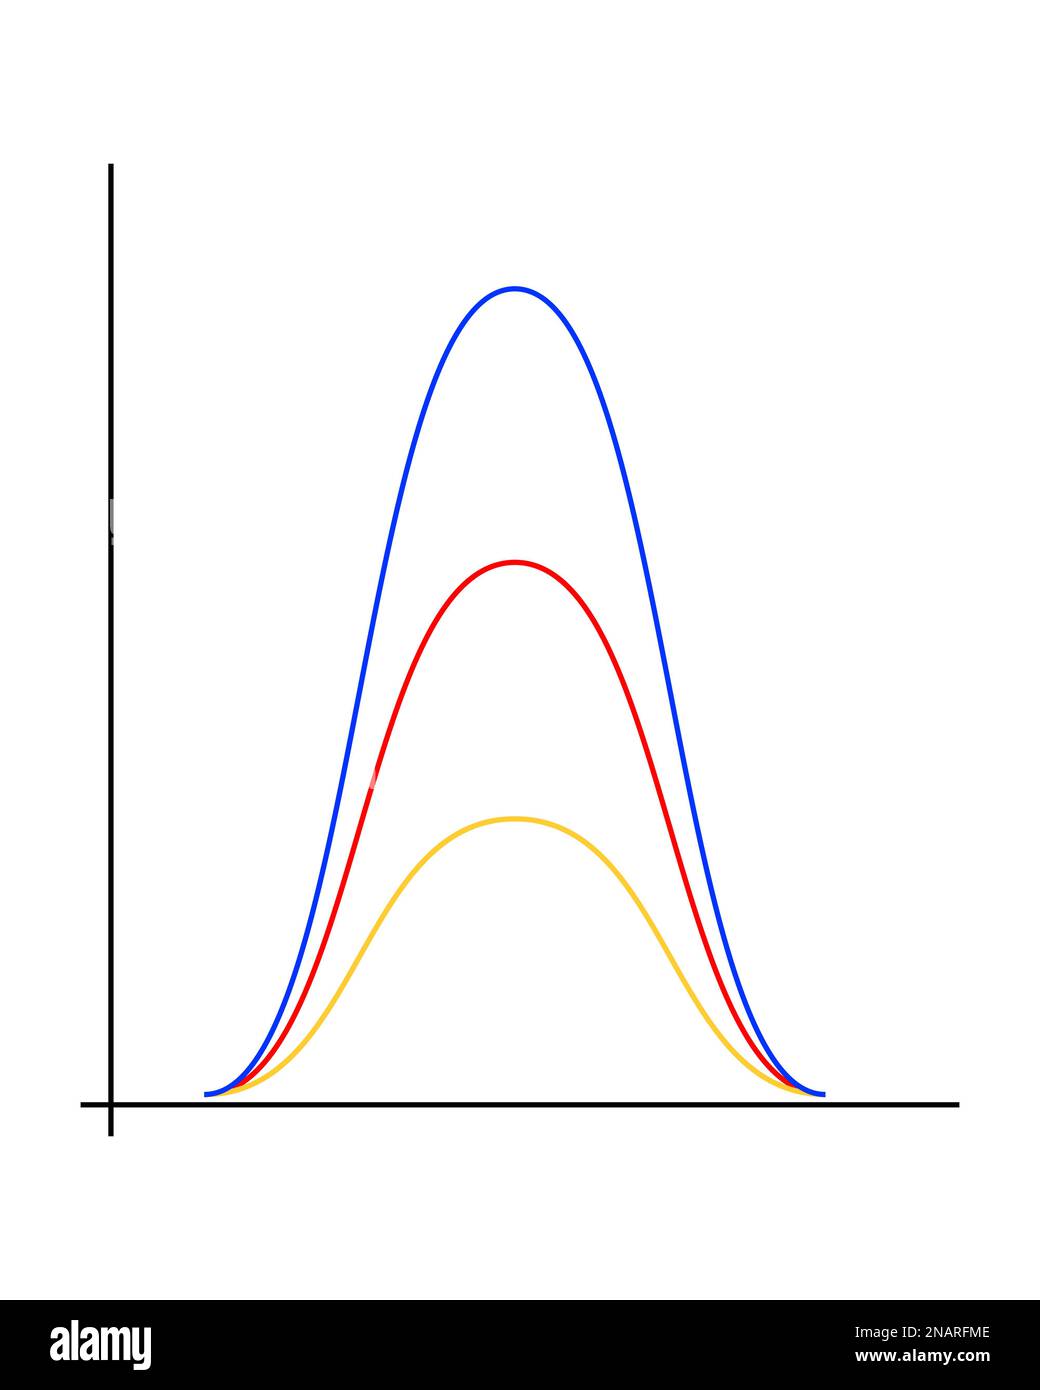 Grafico di distribuzione gaussiano o normale. Linee curve a forma di campana isolate su sfondo bianco. Modello per statistiche o dati logistici. Probabilità Illustrazione Vettoriale